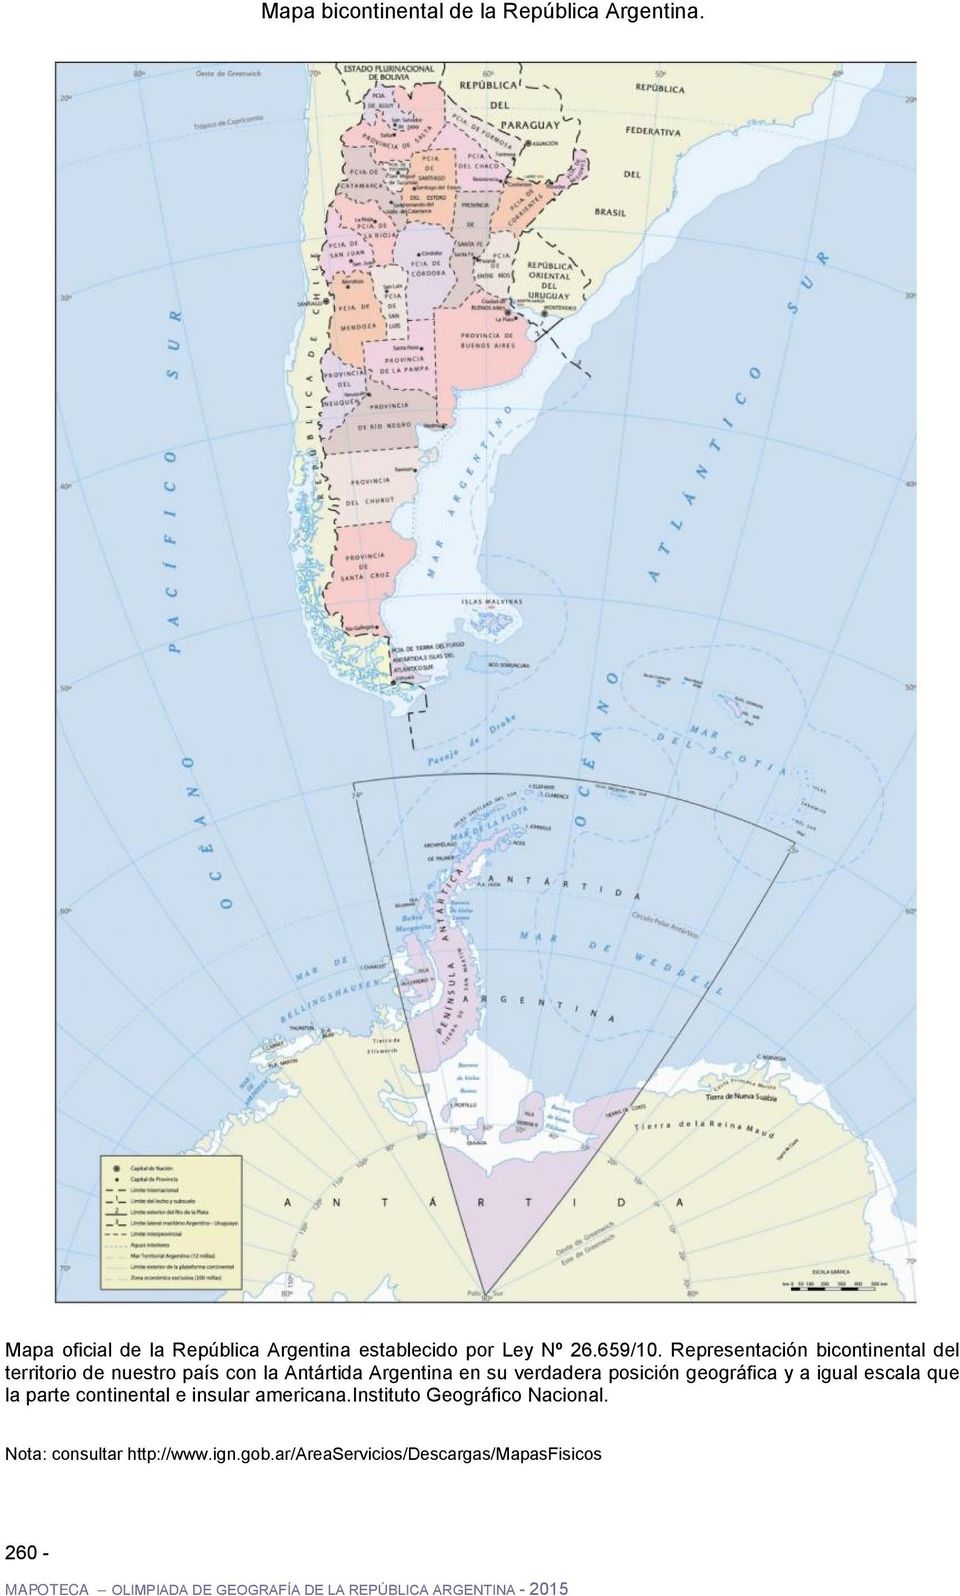 geográfica y a igual escala que la parte continental e insular americana.instituto Geográfico Nacional.